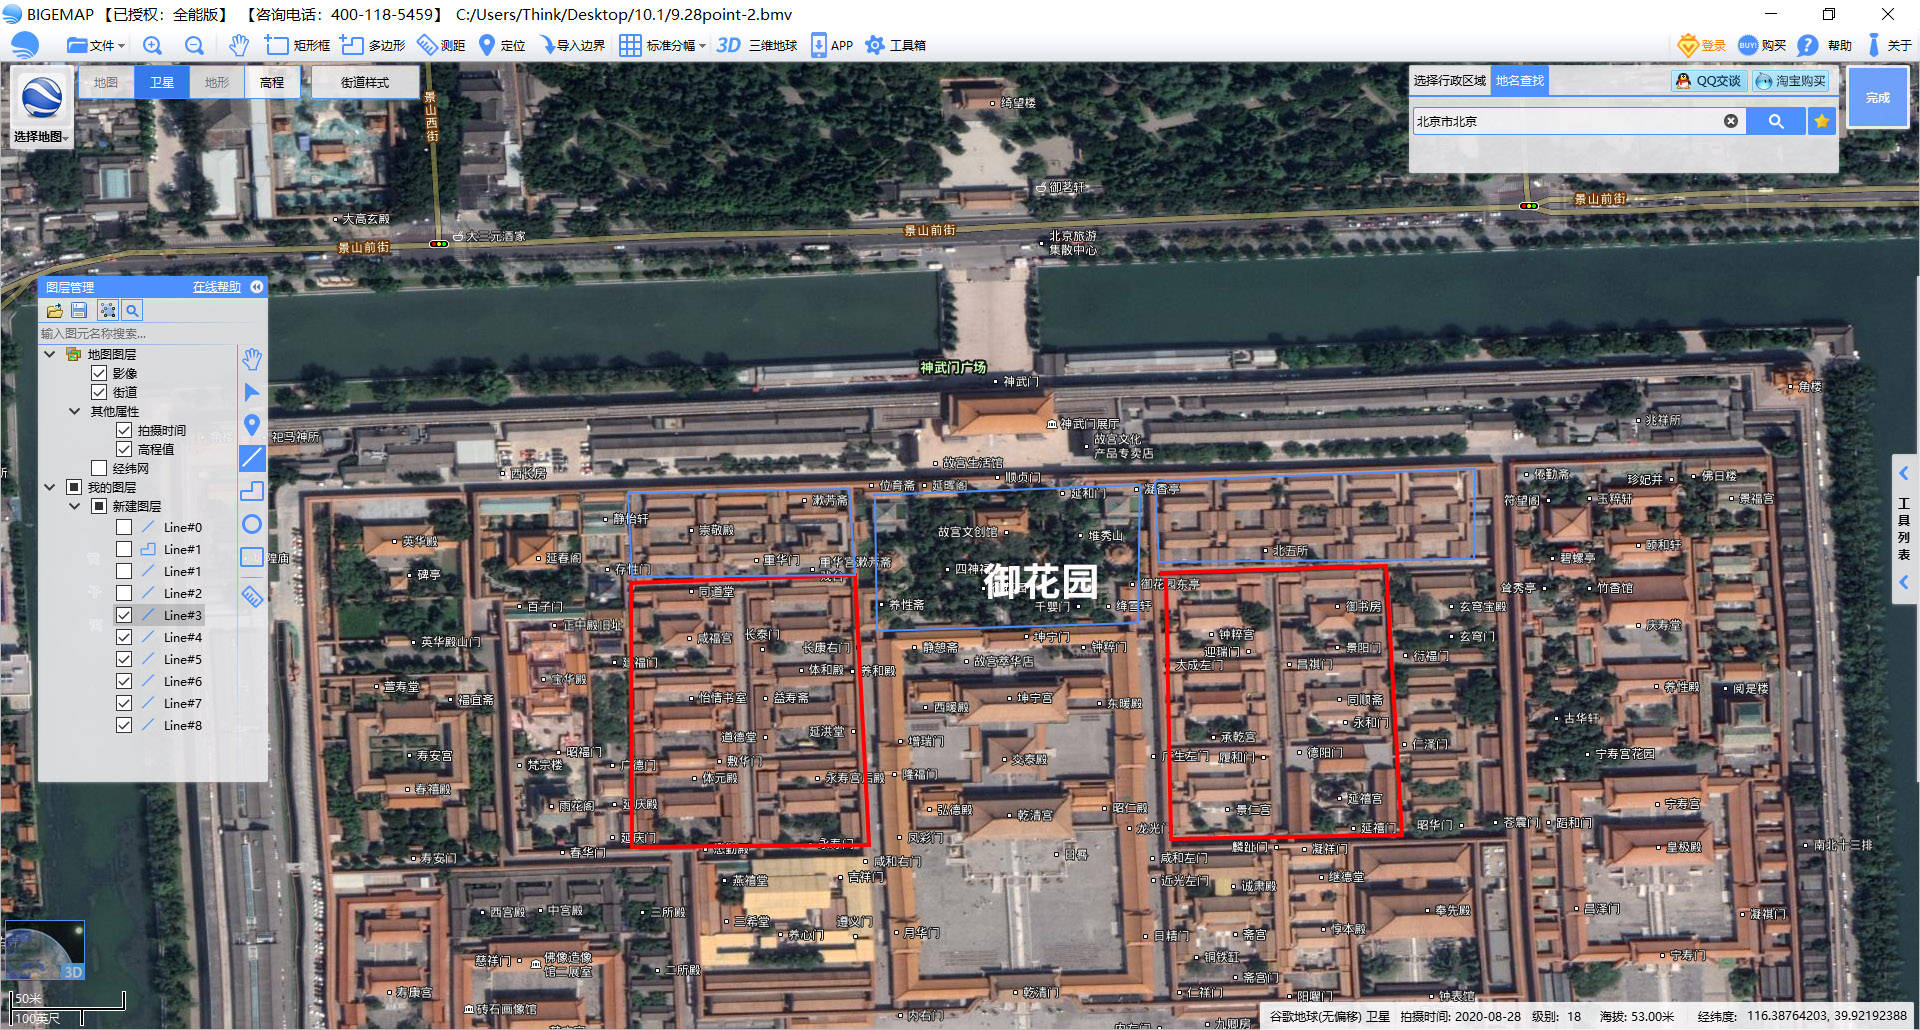 从卫星地图宏观了解六百周年的北京故宫